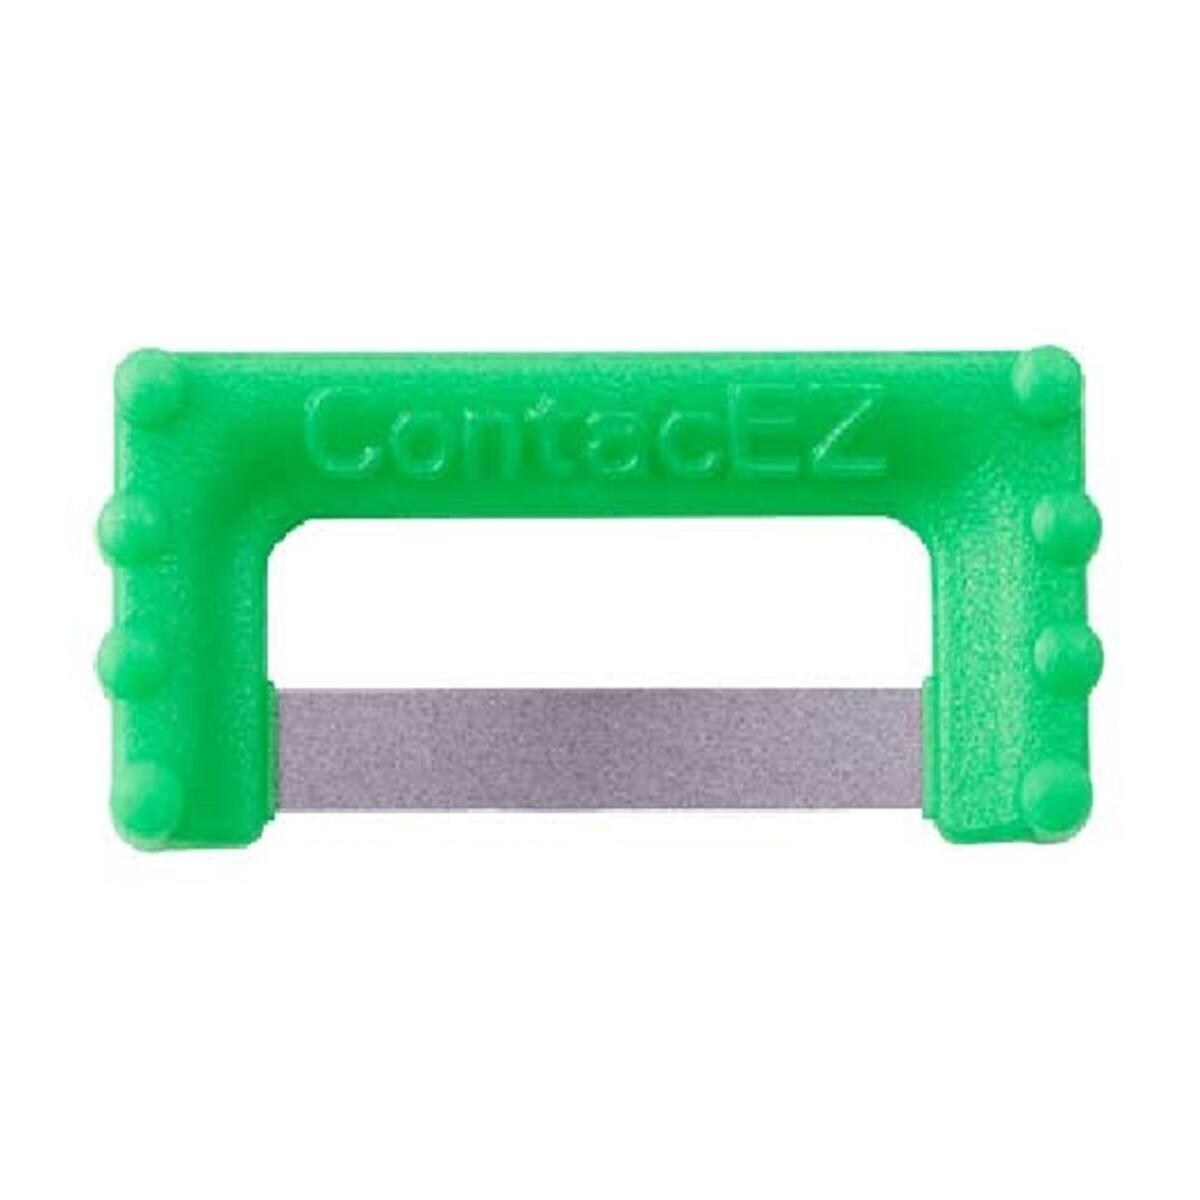 ContacEZ IPR - navulling - REF. 32608 - Groen 0,20mm, 8 stuks